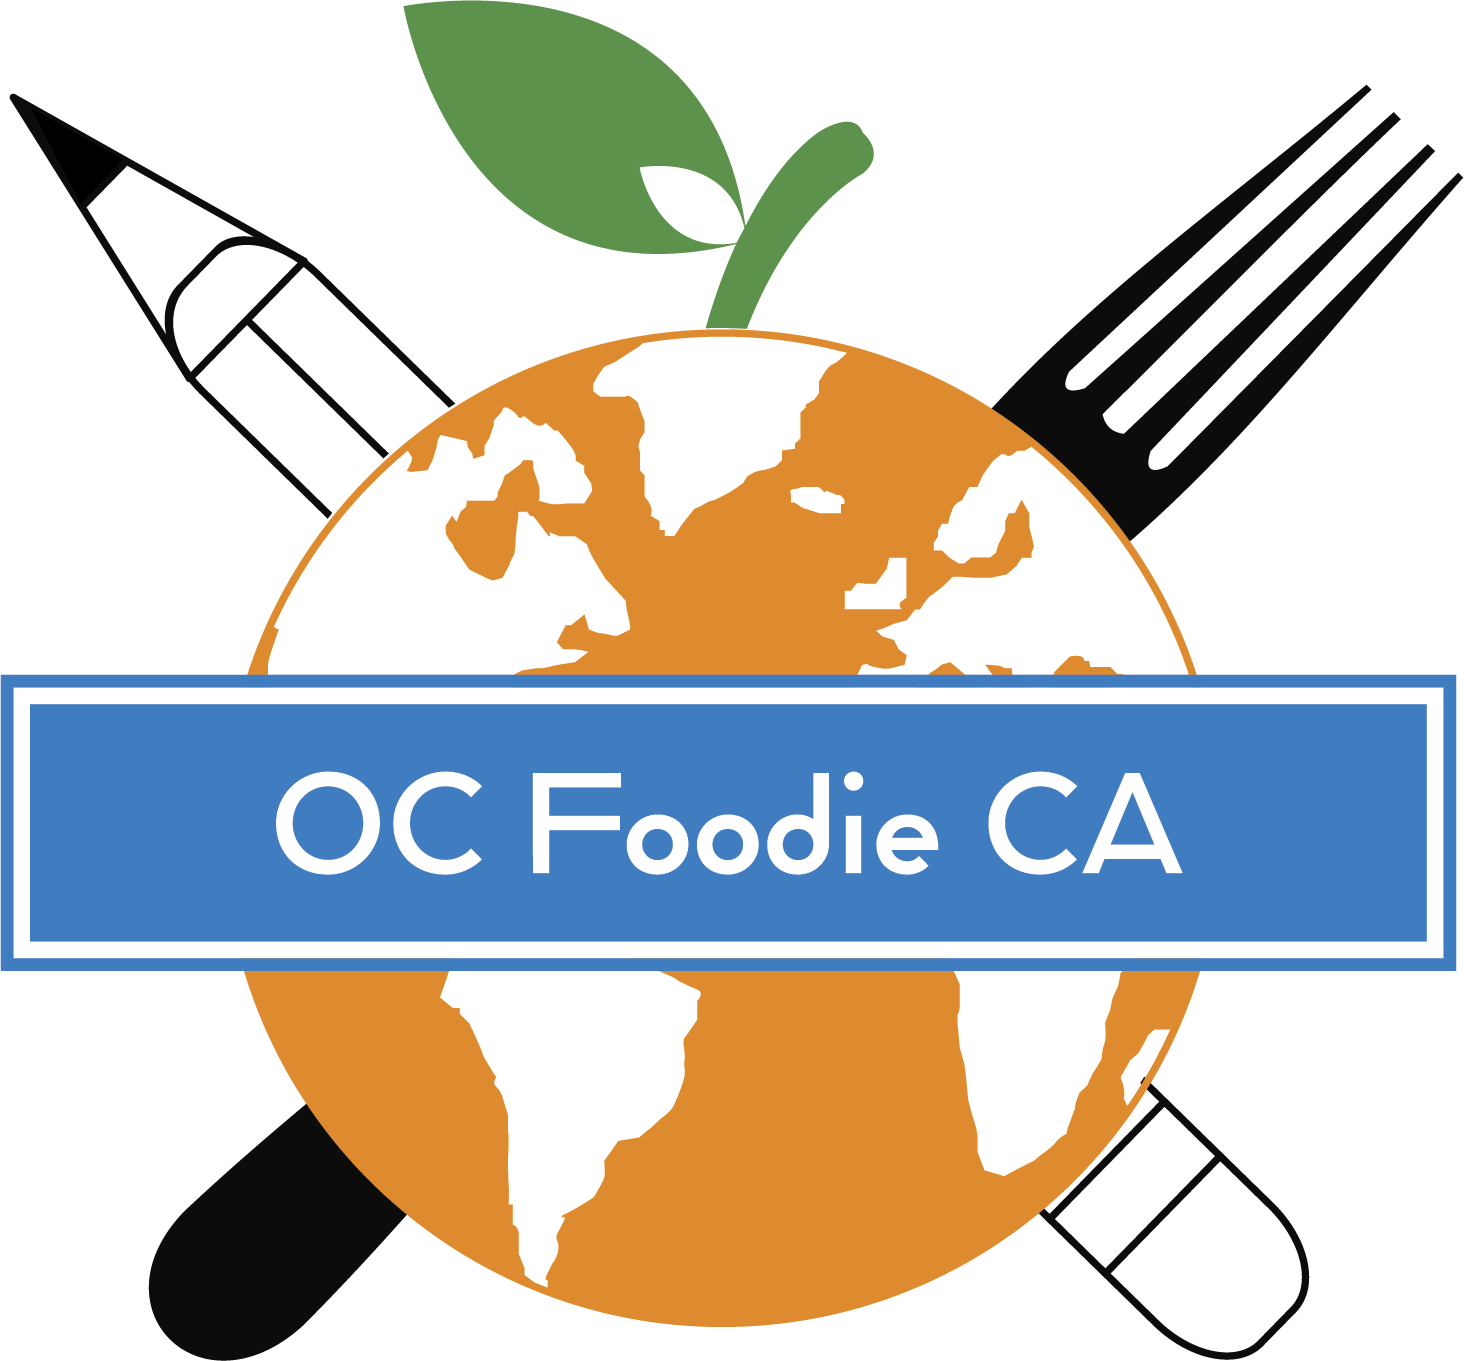 OC Foodie CA